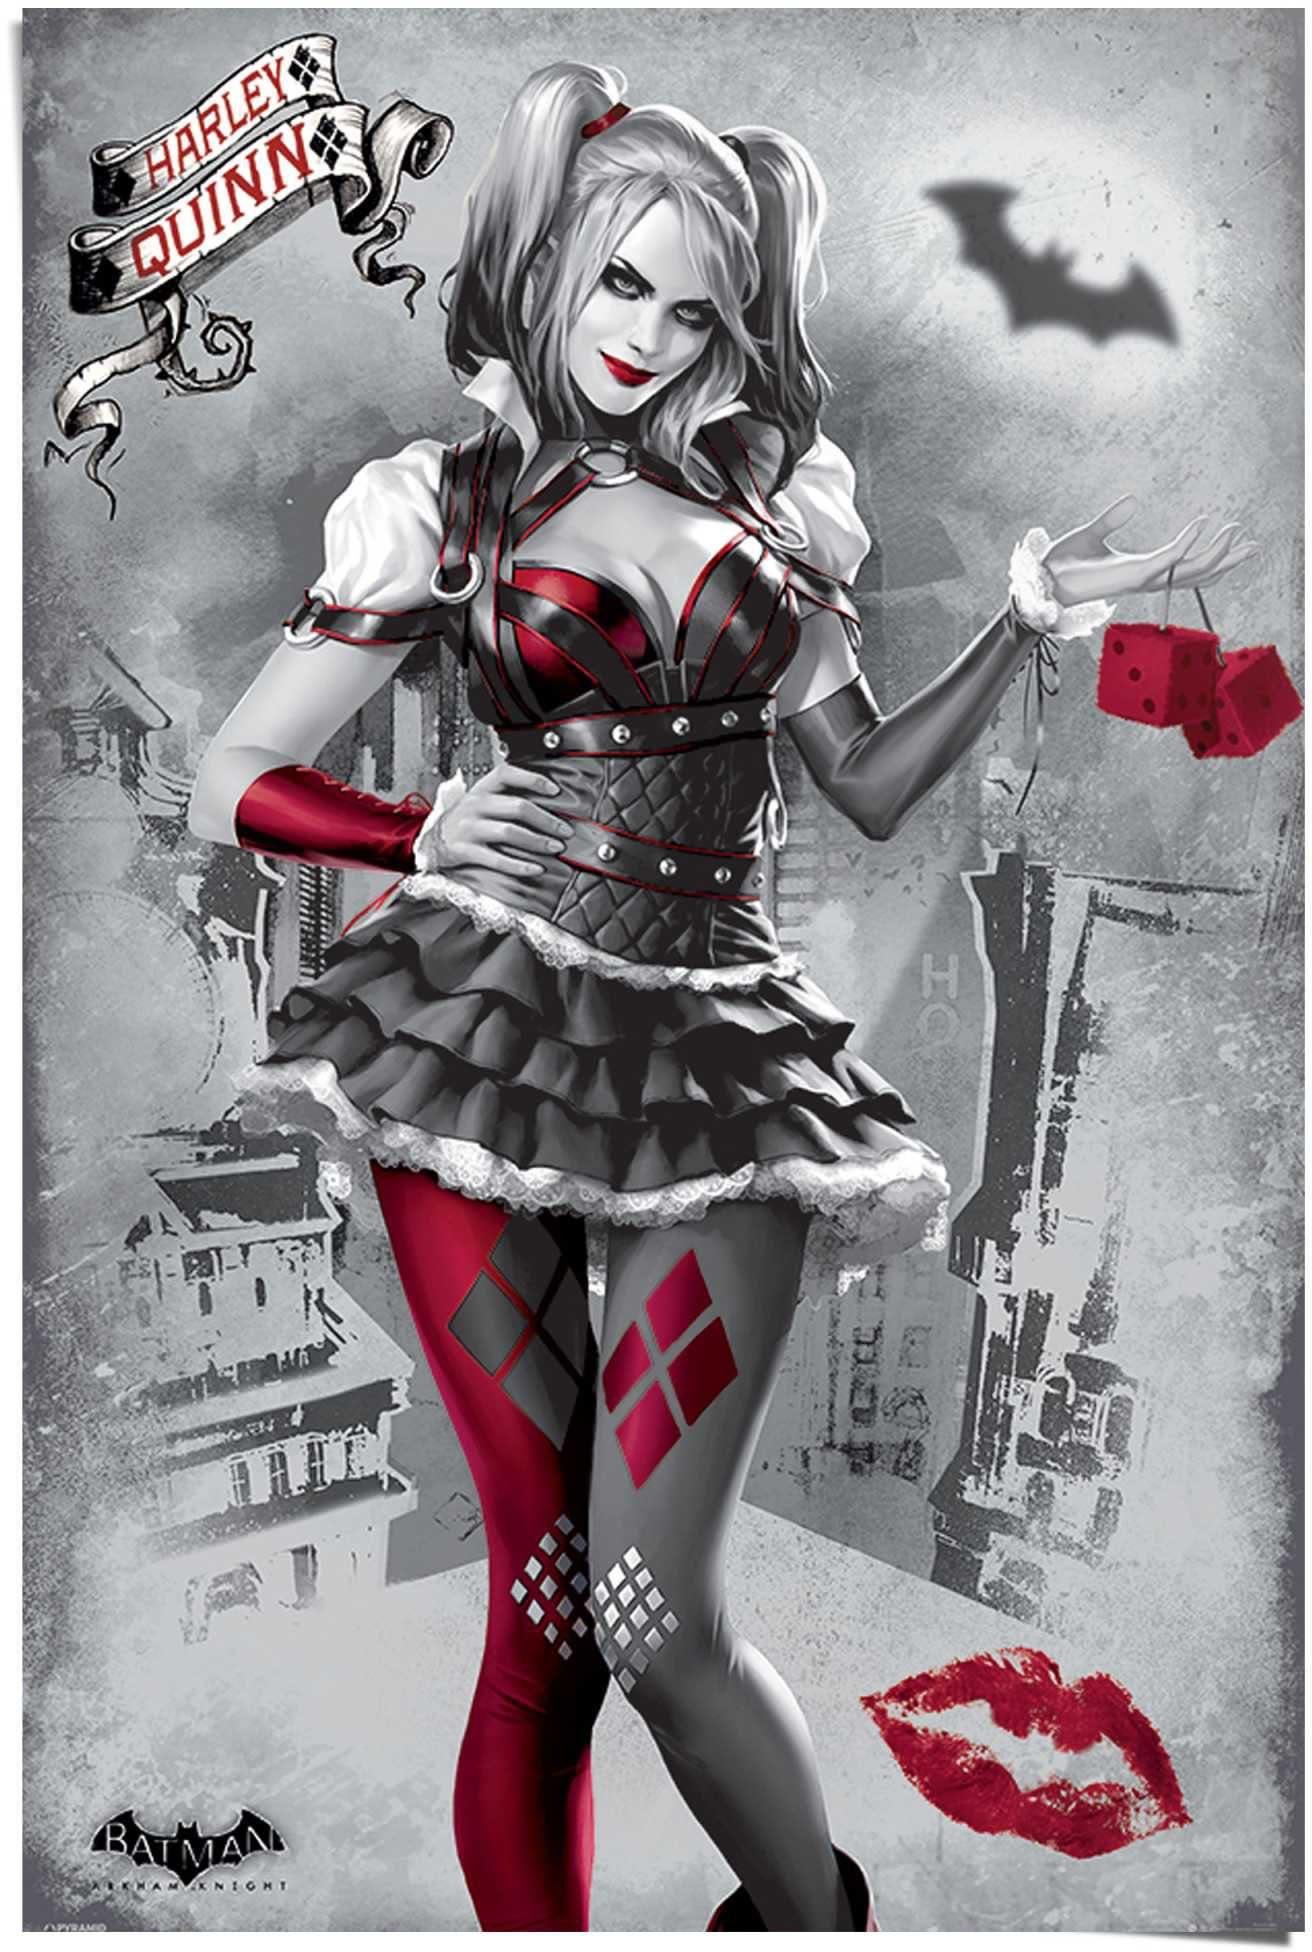 gerollt Quinn, wird Harley verpackt versendet (1 Reinders! Sie und Batman Poster an sicher St), Poster